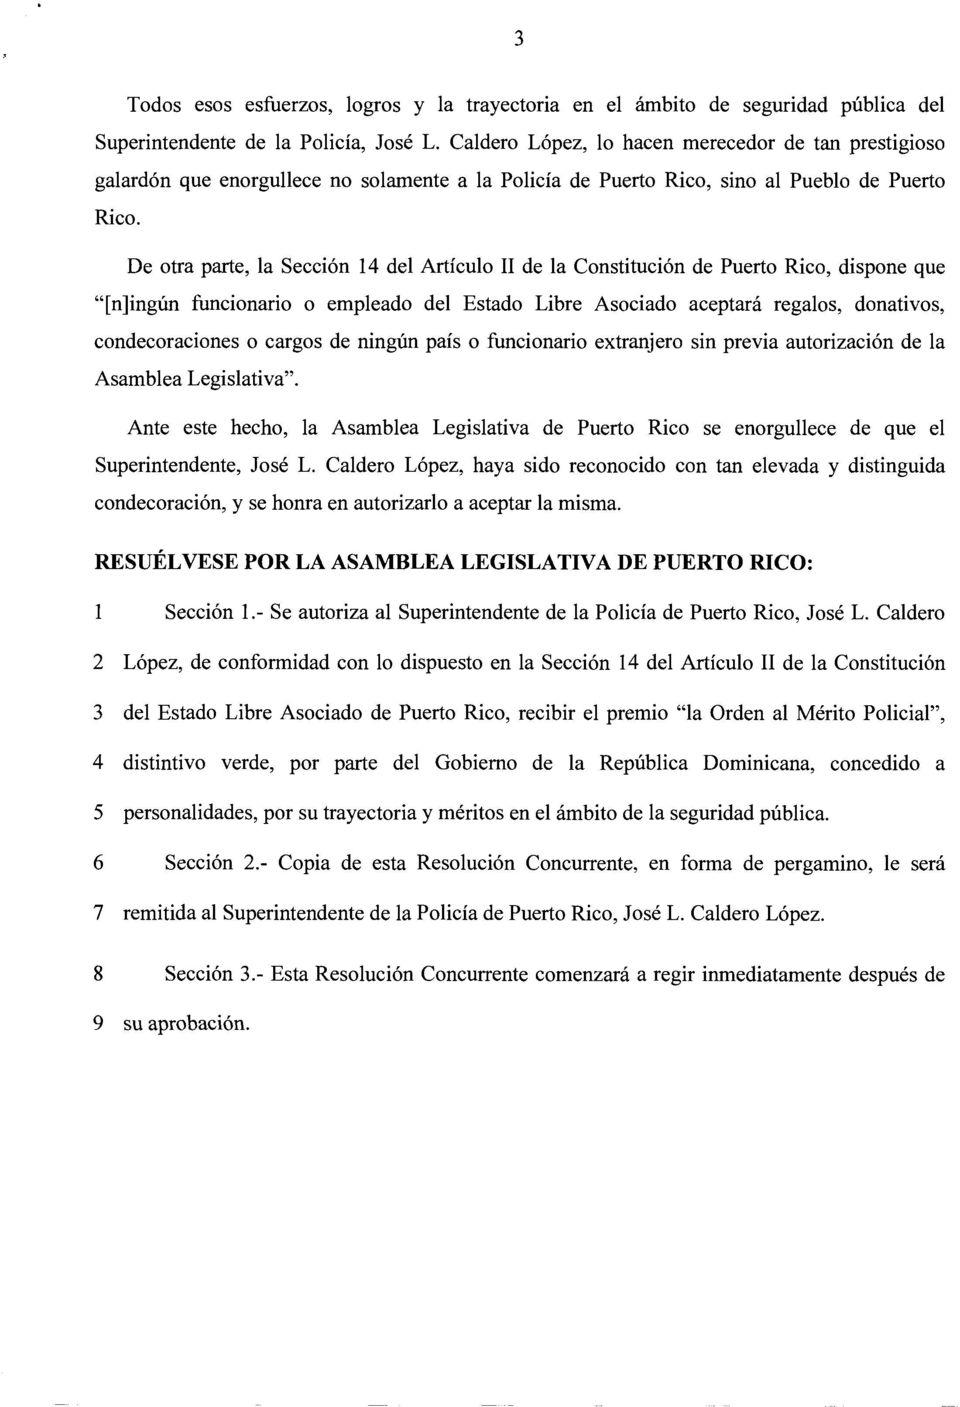 De otra parte, la Seccion 14 del Articulo II de la Constitucion de Puerto Rico, dispone que "[n]ingiln funcionario o empleado del Estado Libre Asociado aceptara regalos, donativos, condecoraciones o